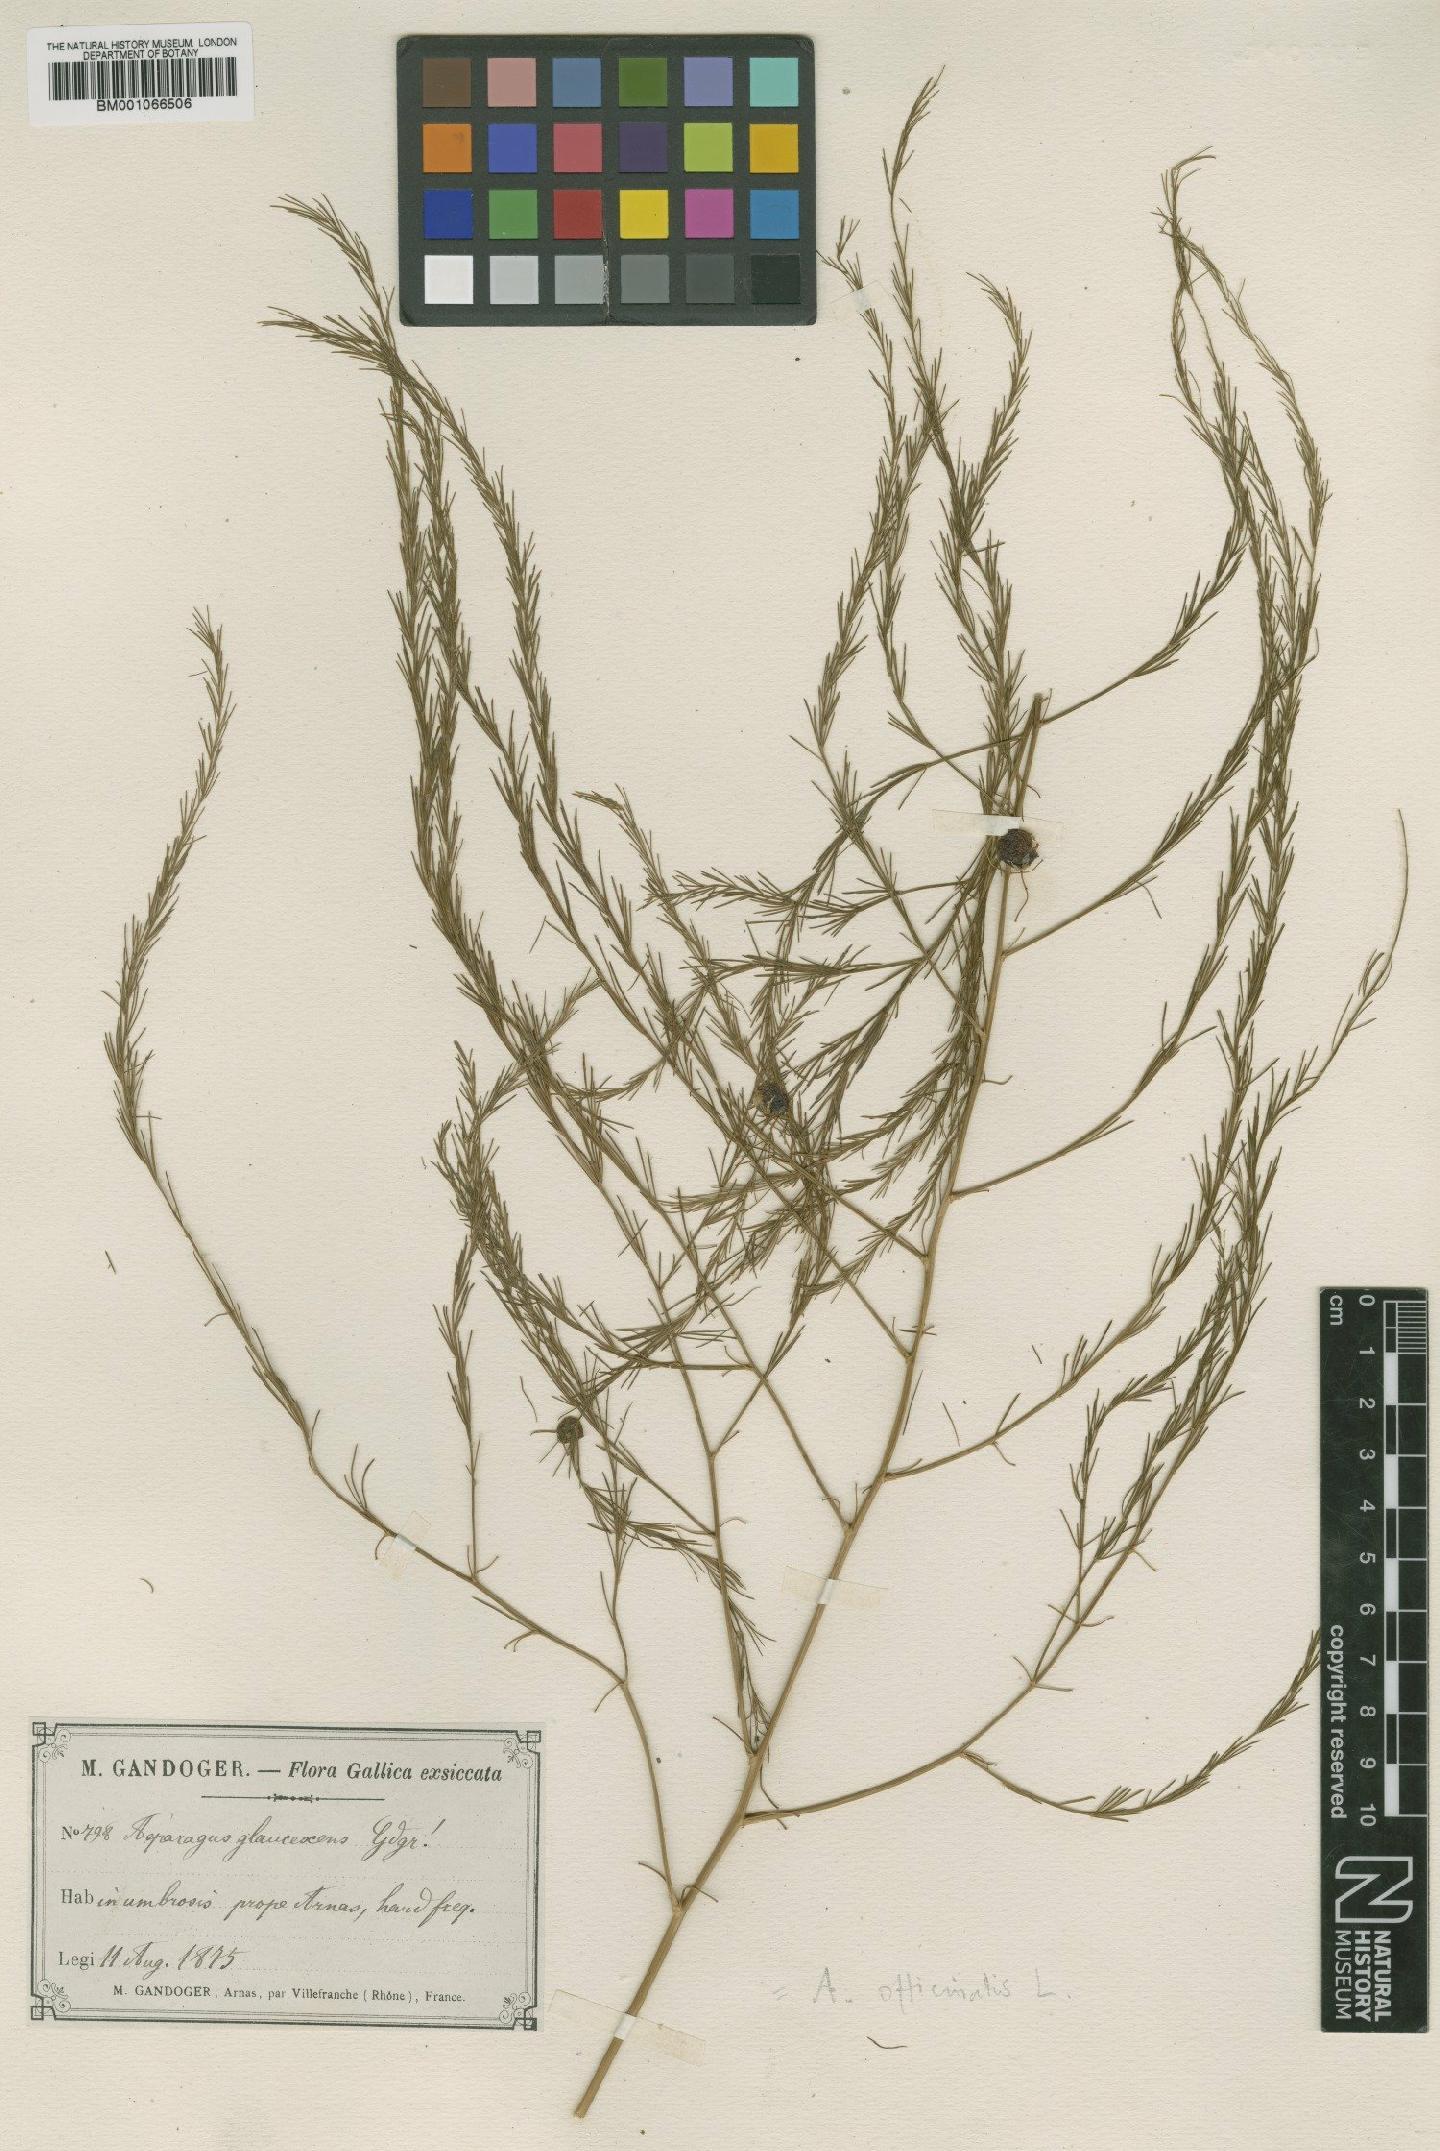 To NHMUK collection (Asparagus officinalis L.; TYPE; NHMUK:ecatalogue:2204969)